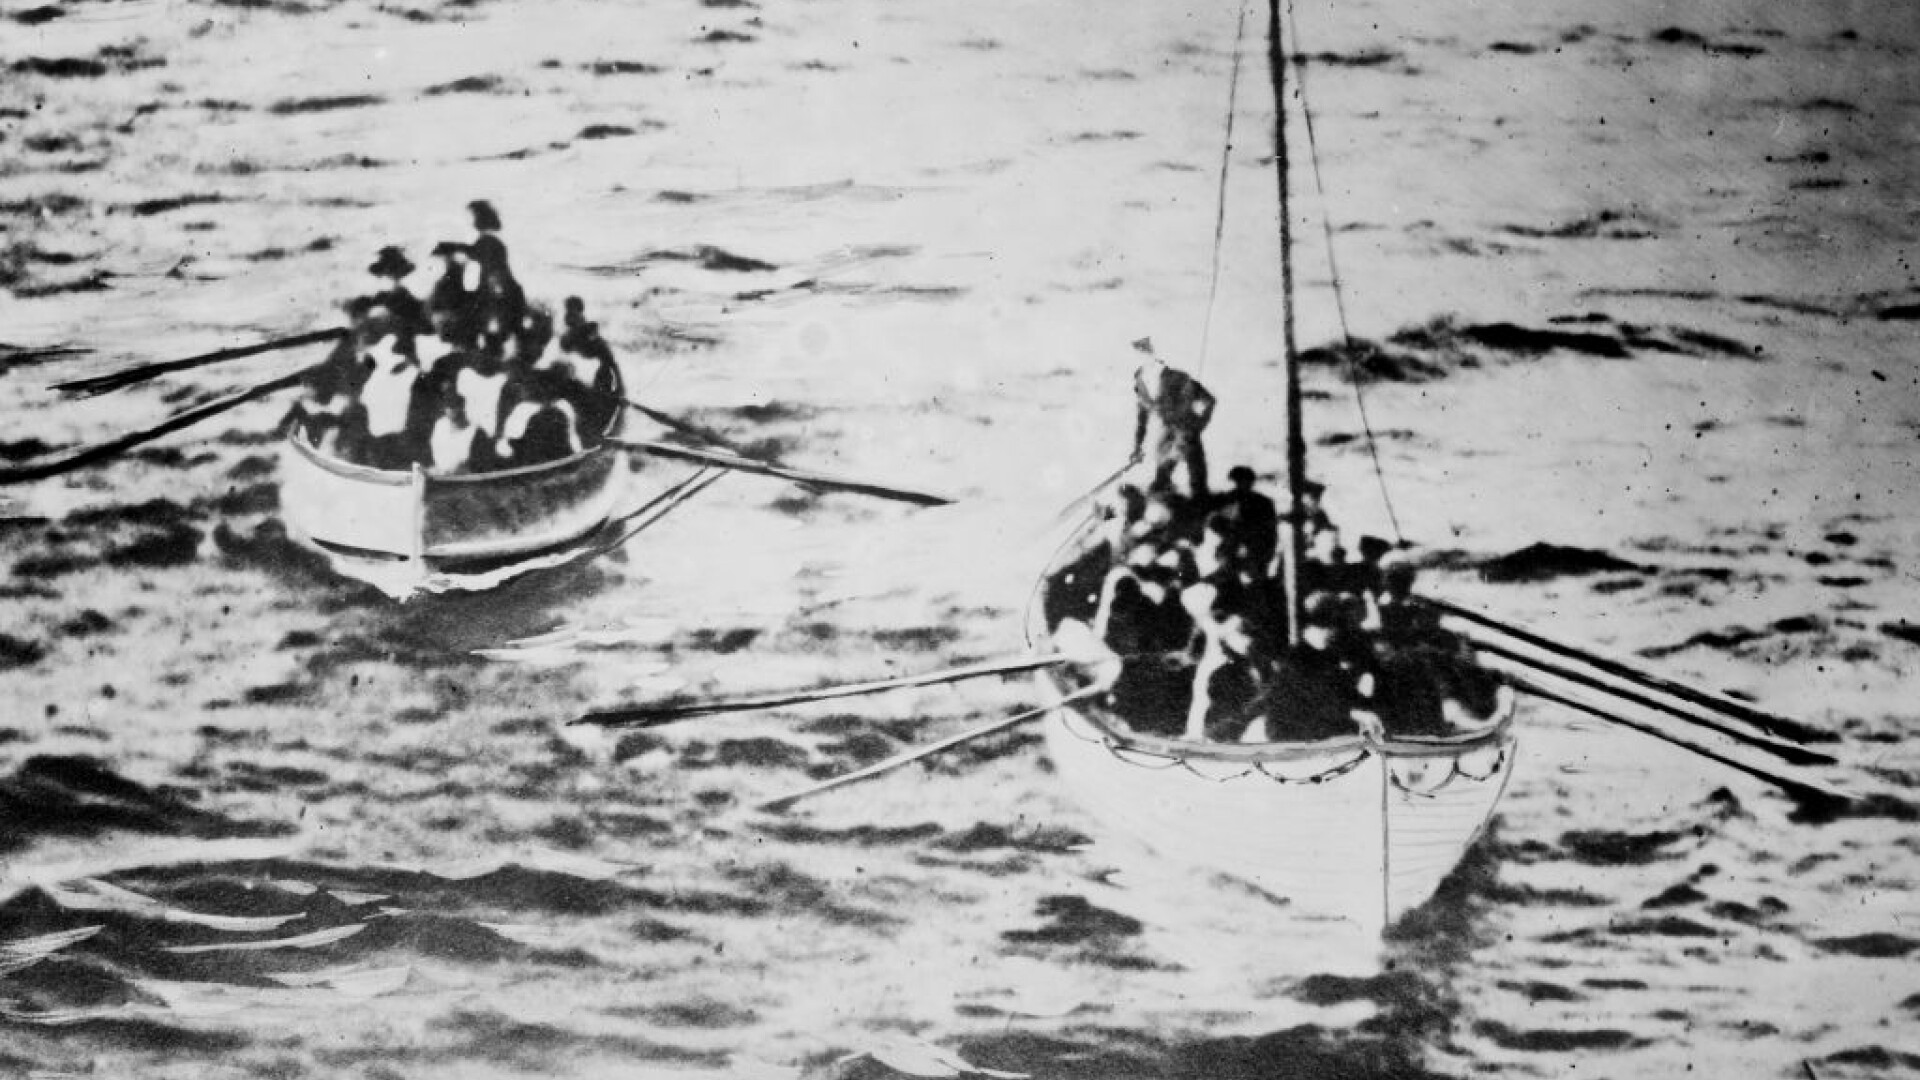 supravietuitori de pe Titanic in barcile de salvare